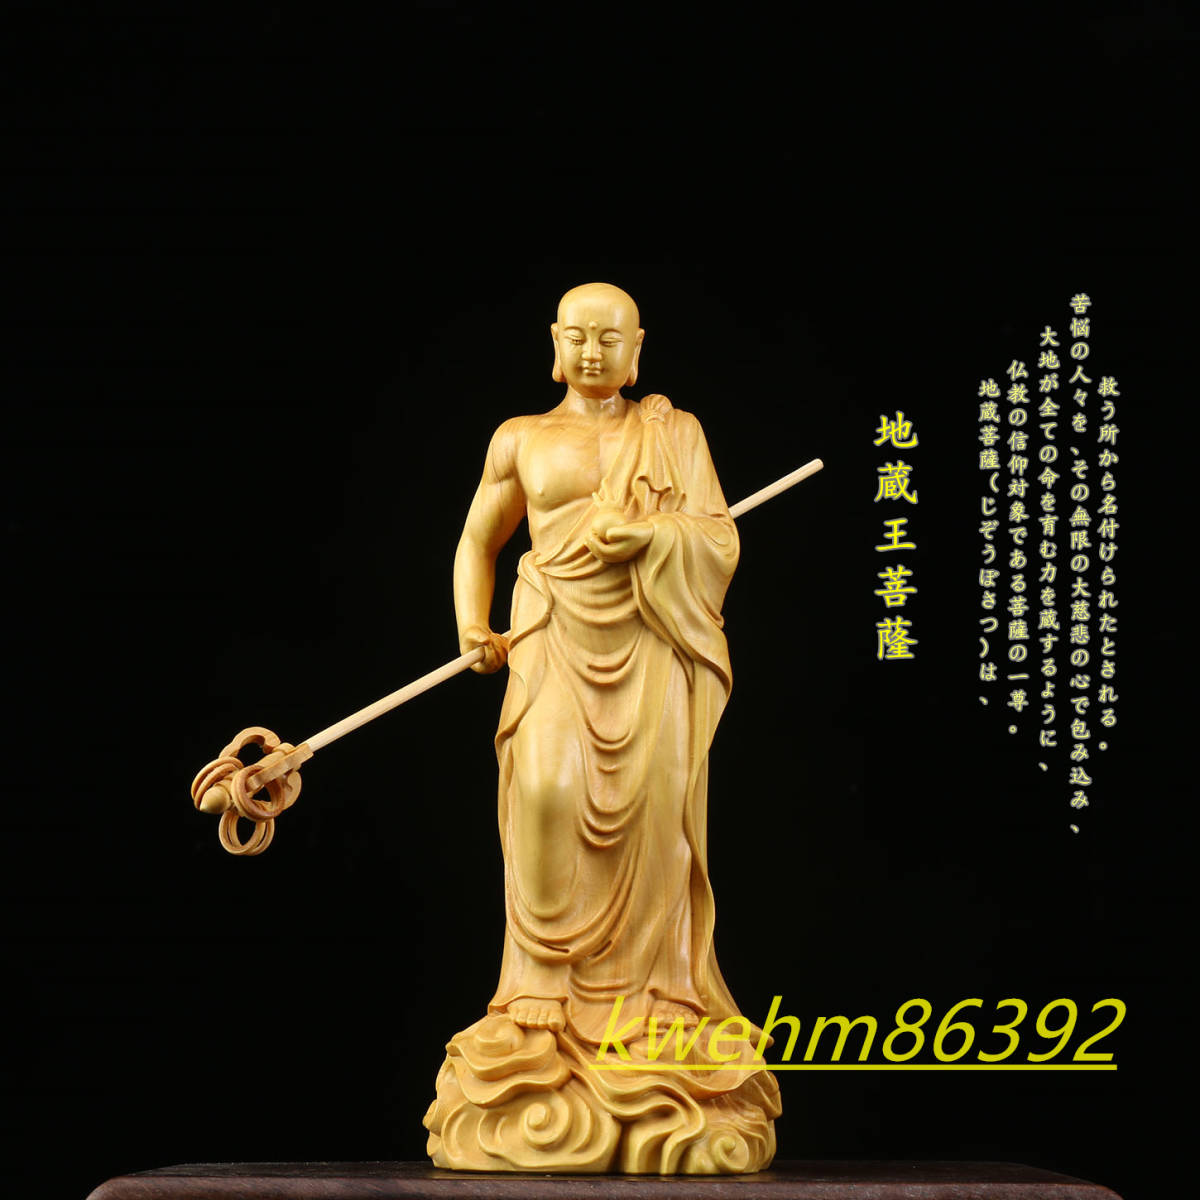 木彫り 仏像 地蔵菩薩 地蔵菩薩像 立像 柘植材 仏教工芸品 精密彫刻 仏師で仕上げ品